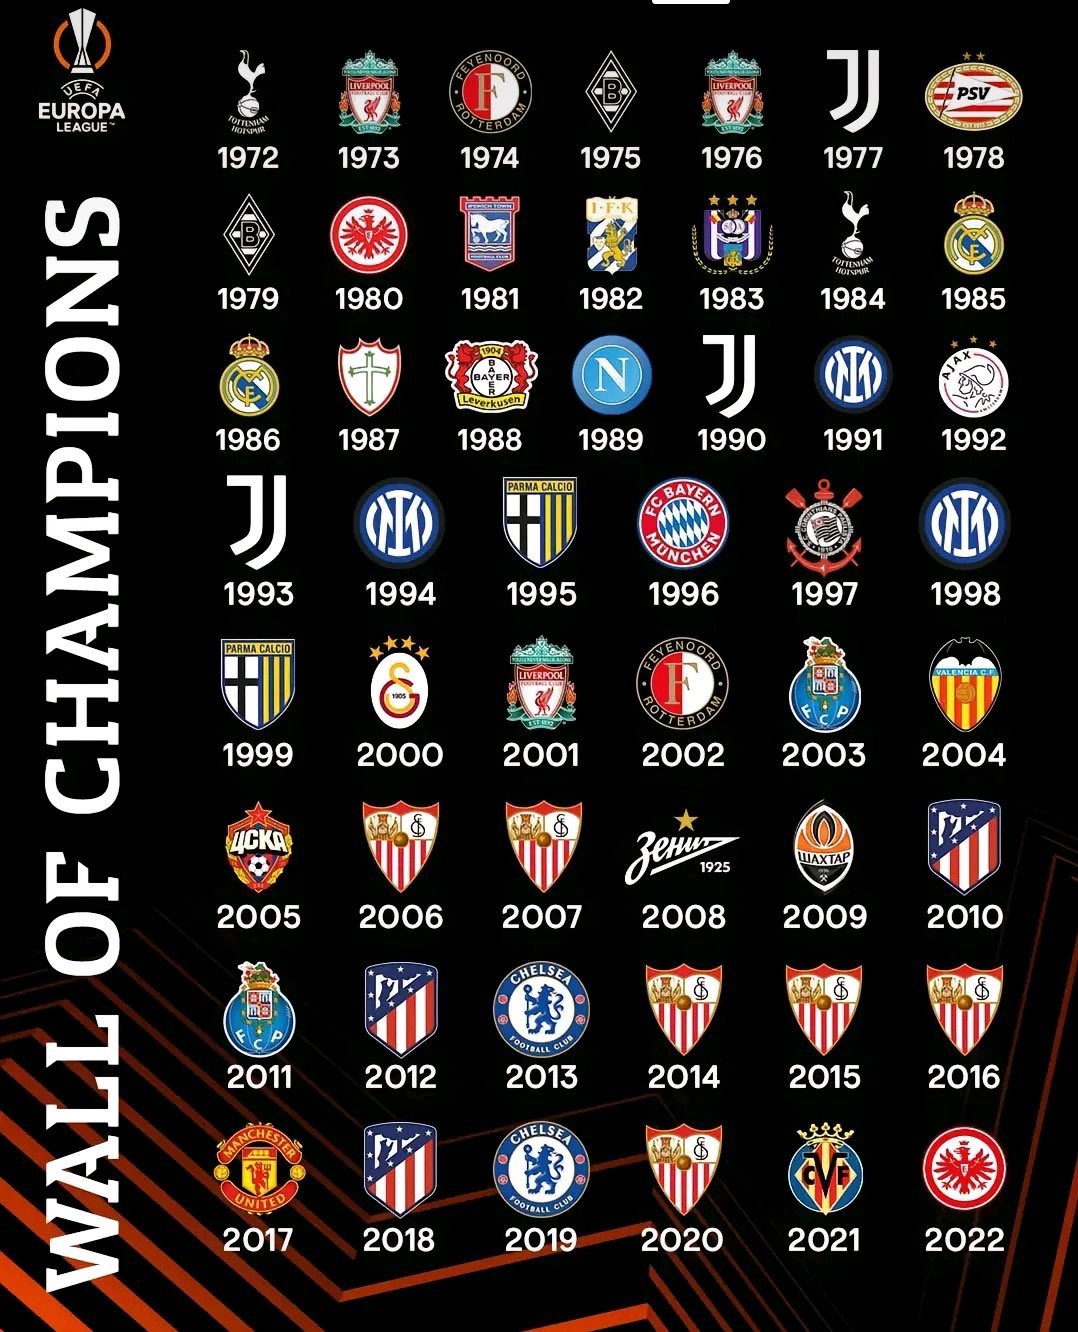 TNT Sports Brasil - Todos os campeões das 63 edições da Champions League!  Quem venceu no ano em que você nasceu? Conta aí pra gente!